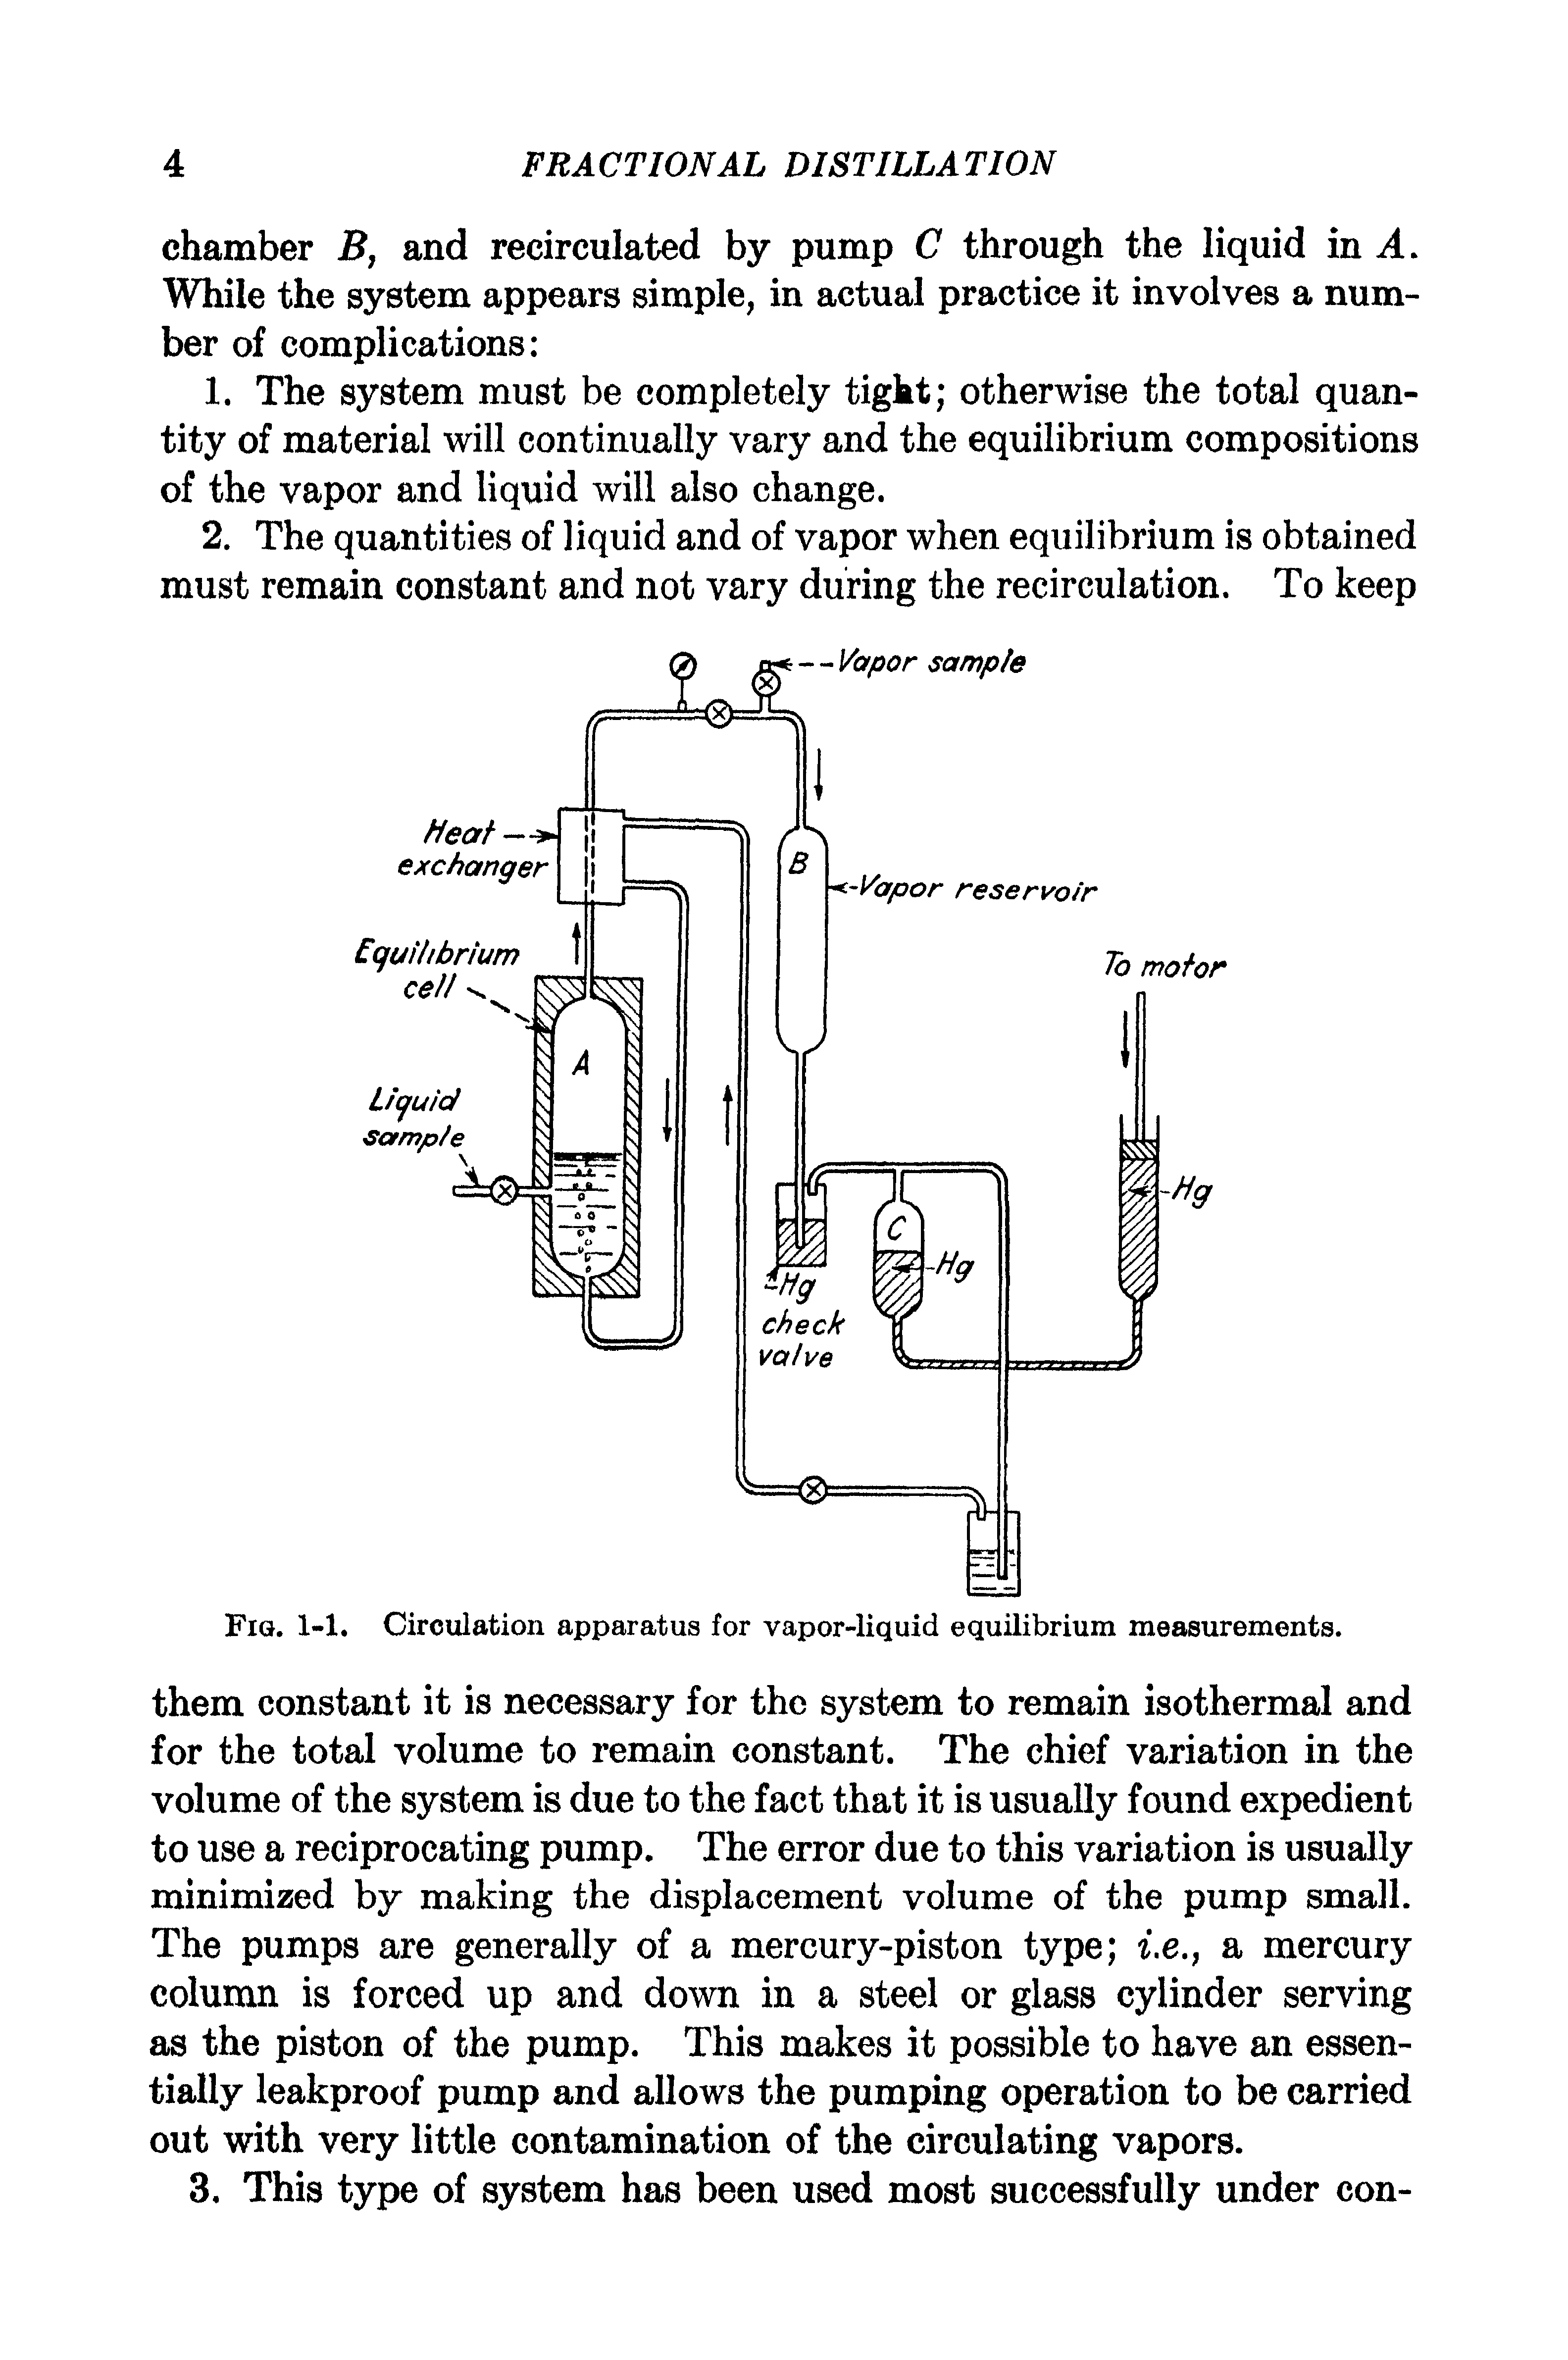 Fig. 1-1. Circulation apparatus for vapor-liquid equilibrium measurements.